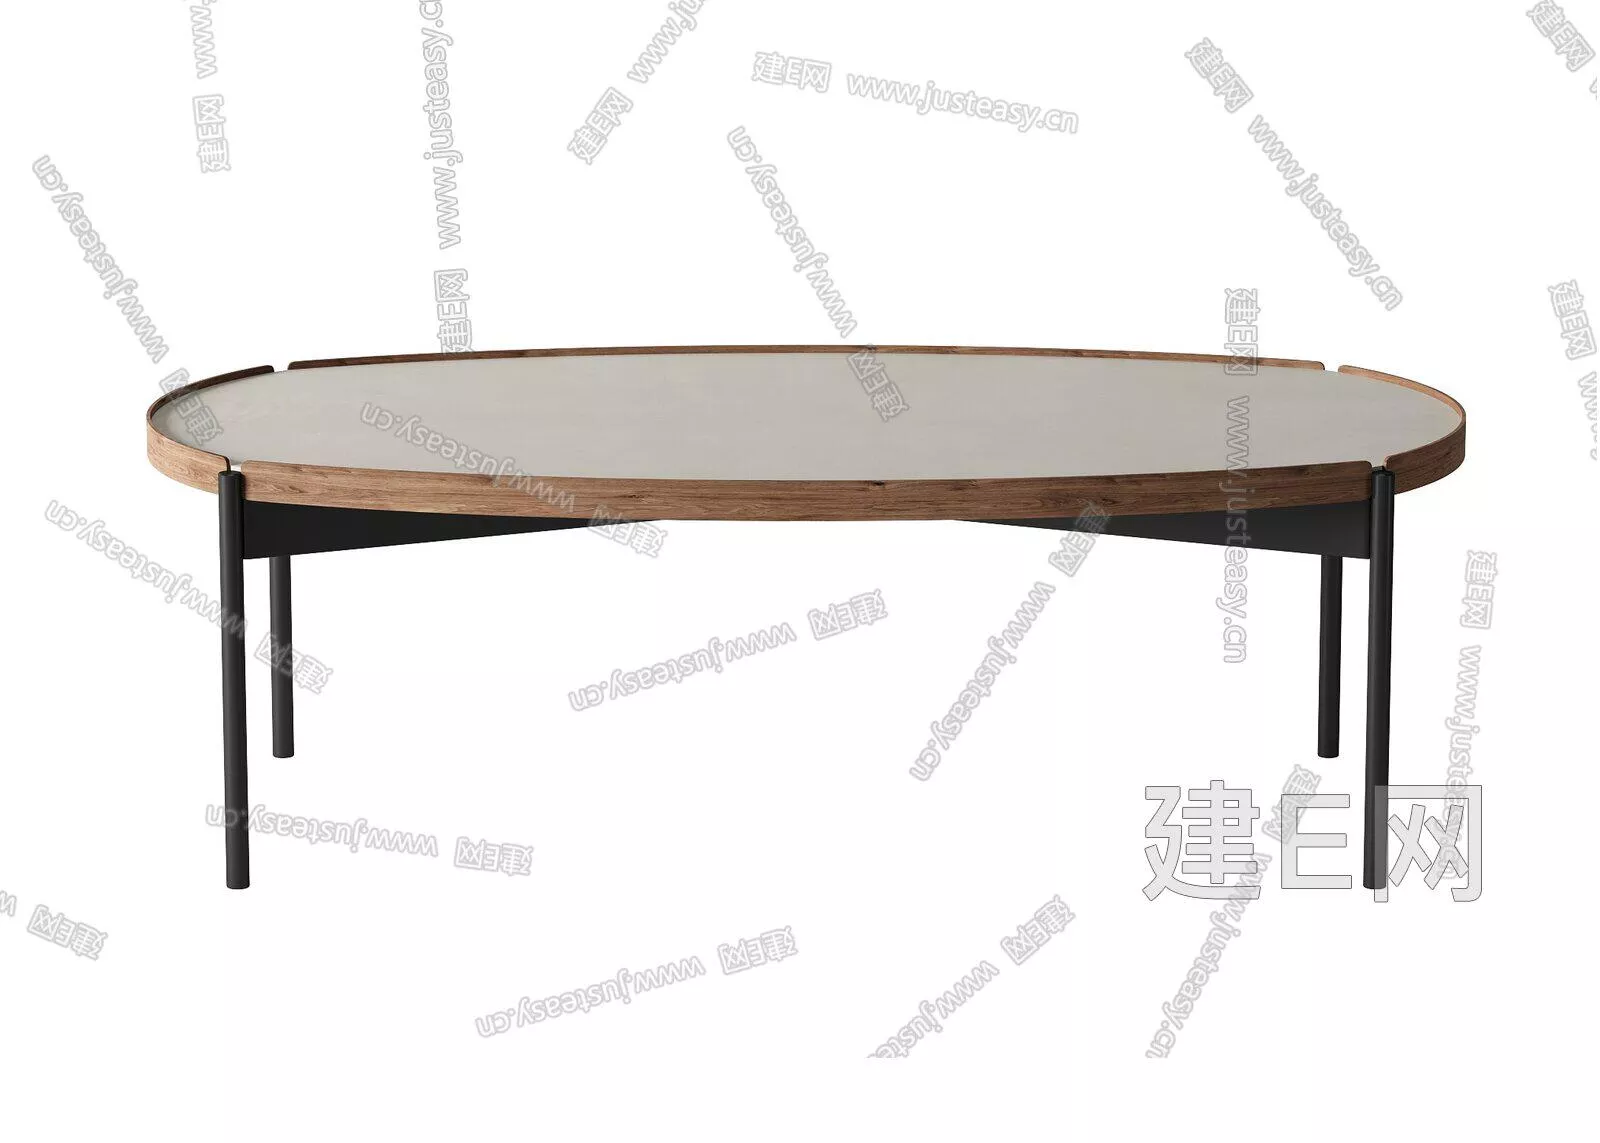 MODERN DINING TABLE SET - SKETCHUP 3D MODEL - ENSCAPE - 106909072